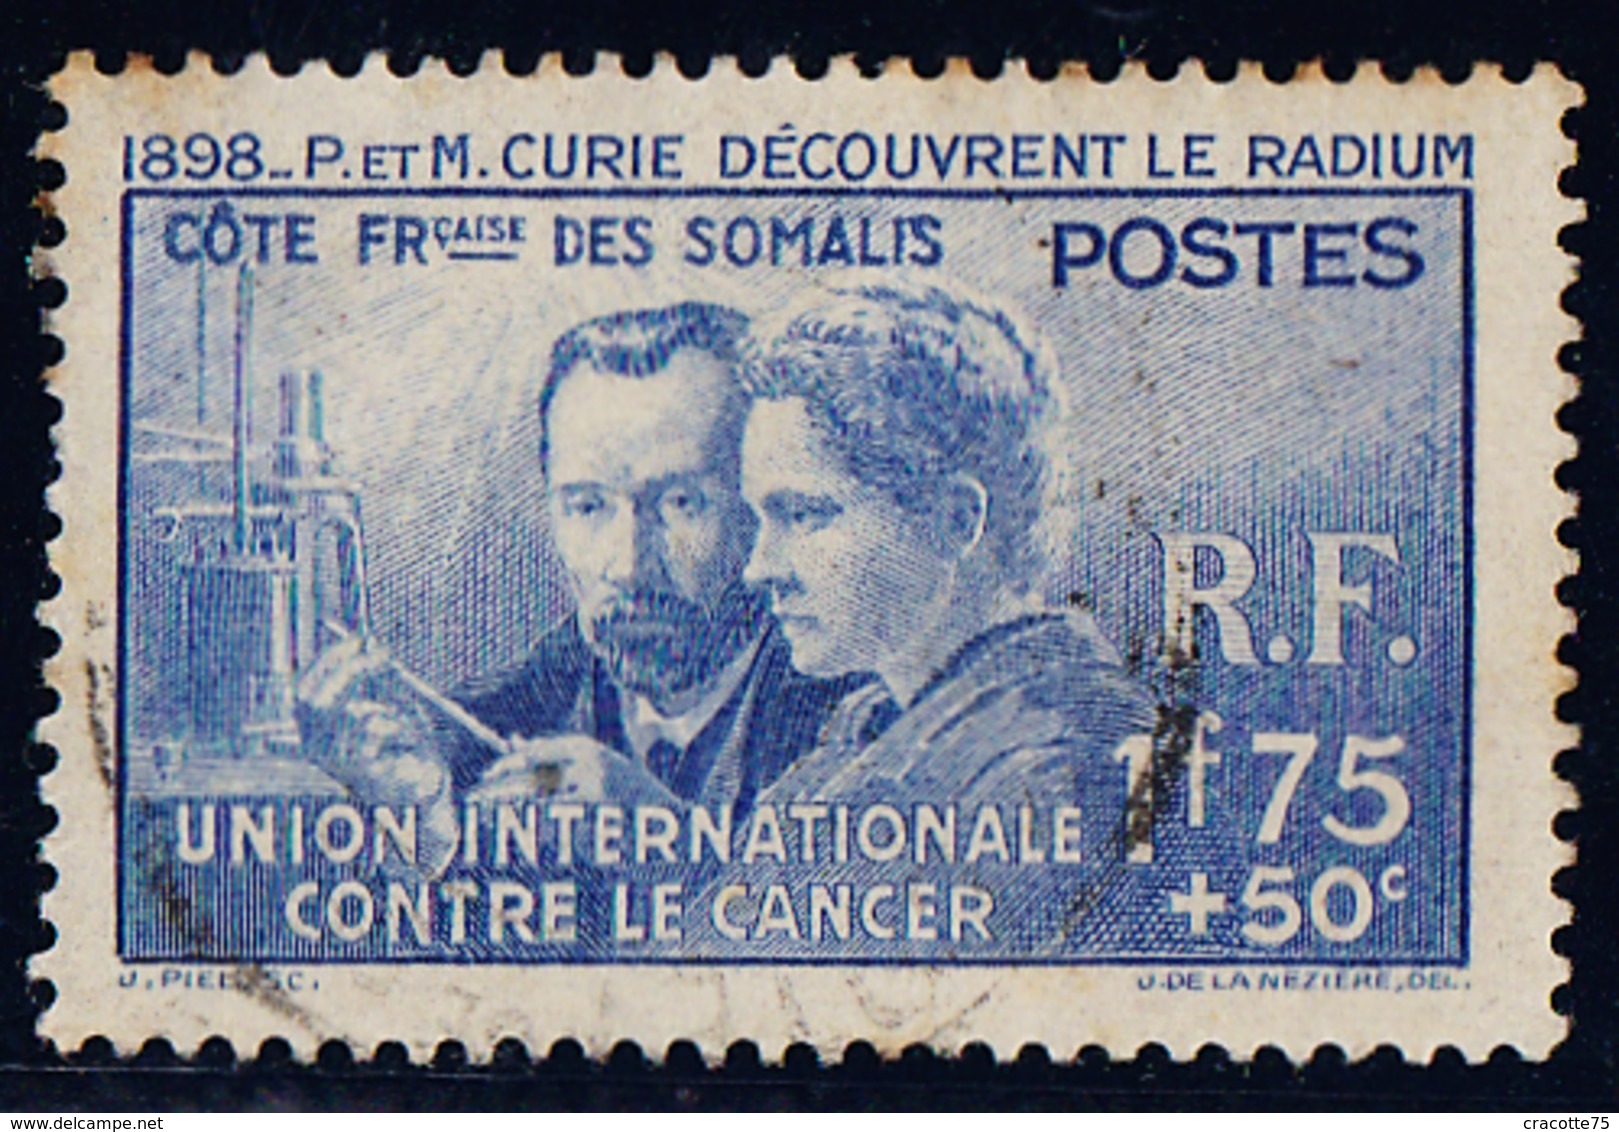 COTE DES SOMALIS - N°147 OBLITERE .  MARIE ET PIERRE CURIE. - 1938 Pierre Et Marie Curie